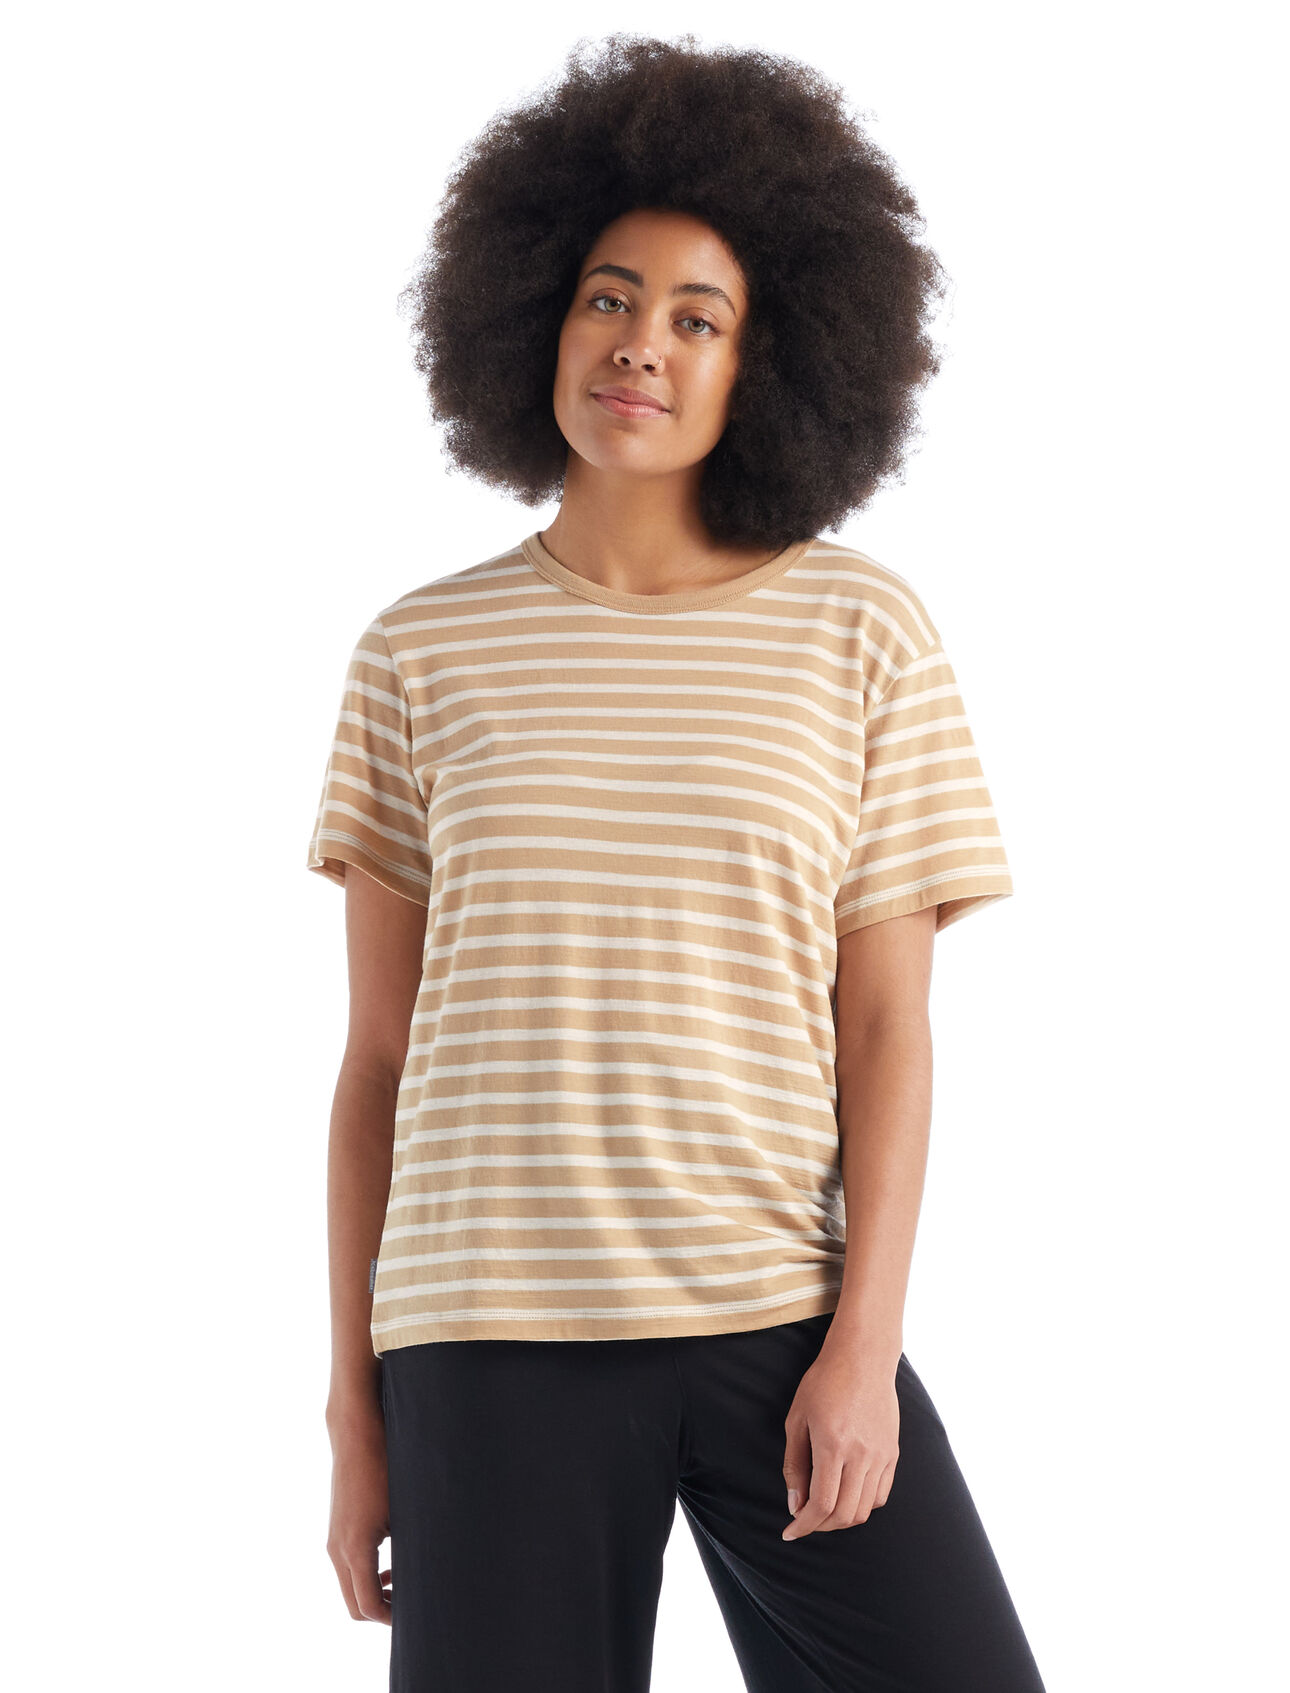 Dam Granary kortärmad t-shirt i merino med ränder Granary kortärmad t-shirt med ränder är en klassisk tröja med en avslappnad passform och mjuk, ventilerande 100% merinoull. Det är ett självklart plagg för vardaglig komfort och stil. 